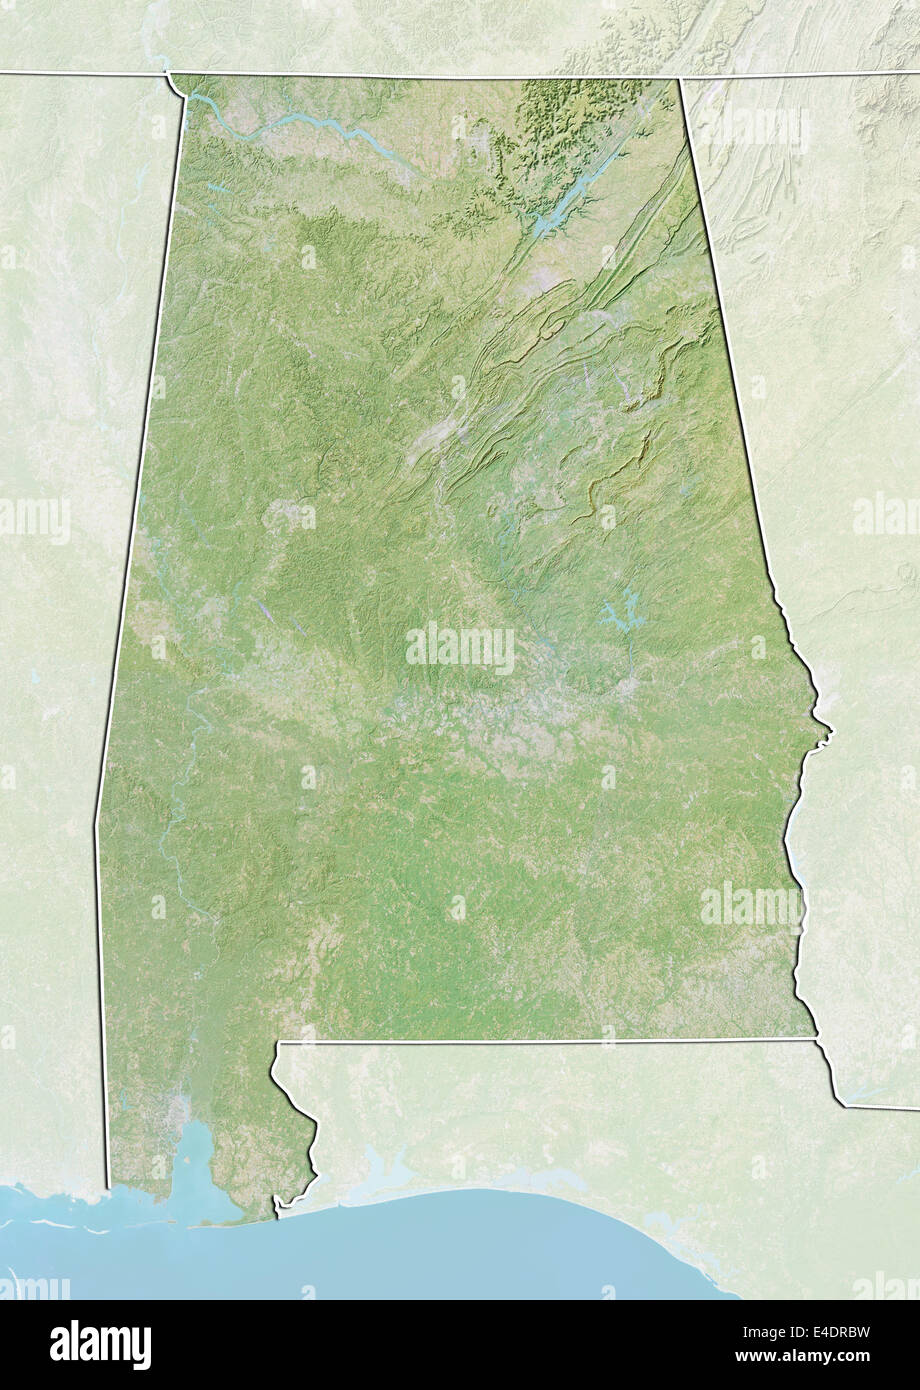 État de l'Alabama, United States, carte en relief Banque D'Images